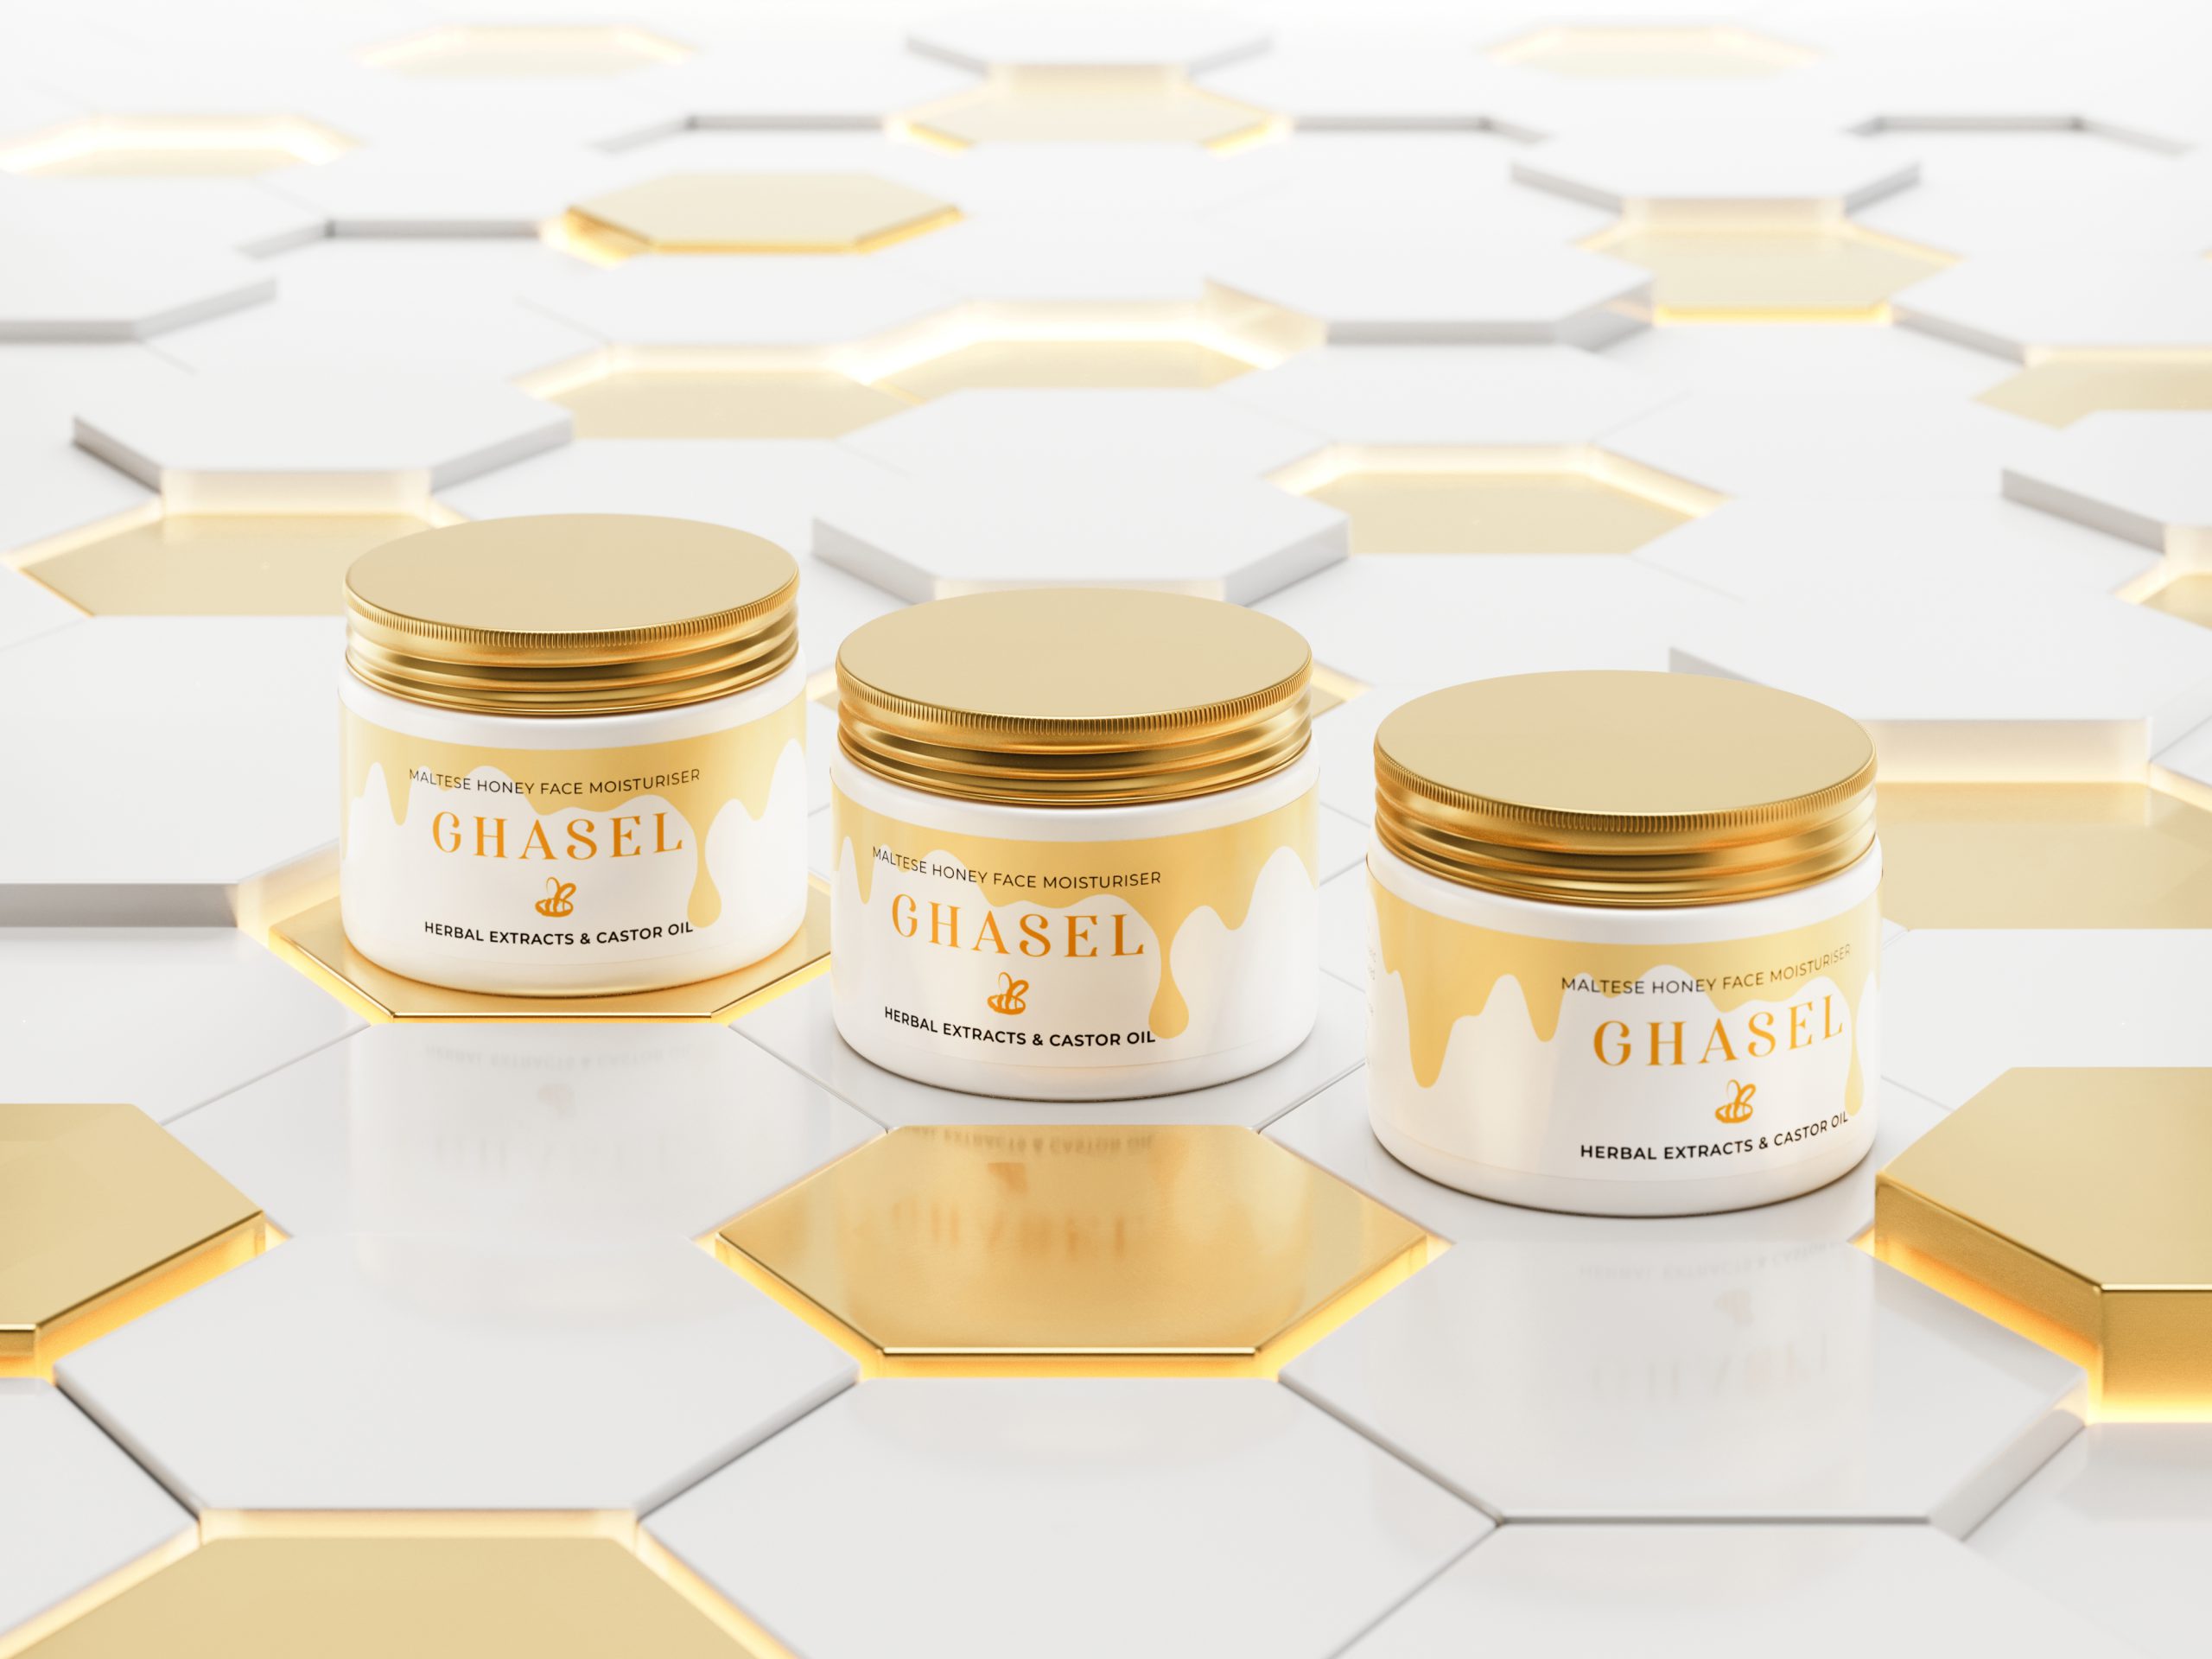 Offrez un soin ultra-doux à votre visage grâce au GHASEL Maltese Honey Face Moisturiser